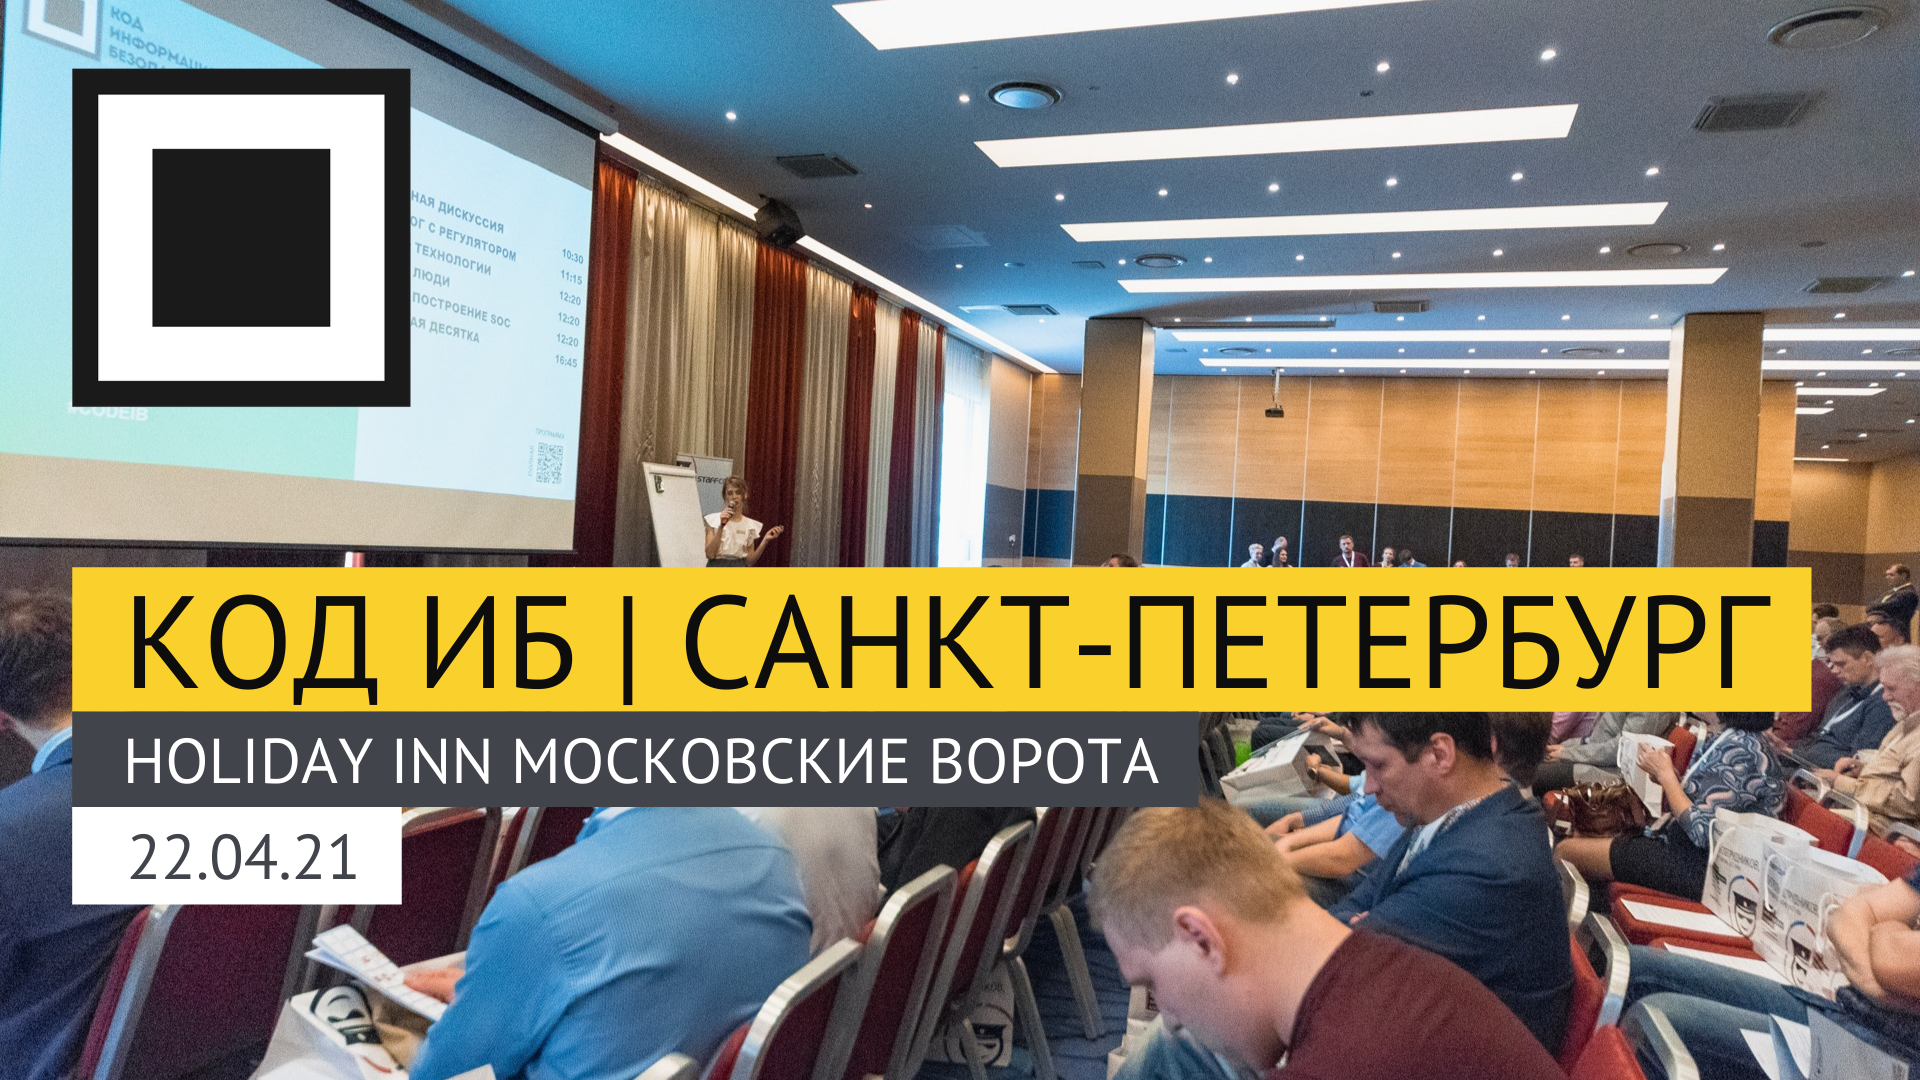 Конференция по информационной безопасности в Северной столице России пройдёт 22 апреля